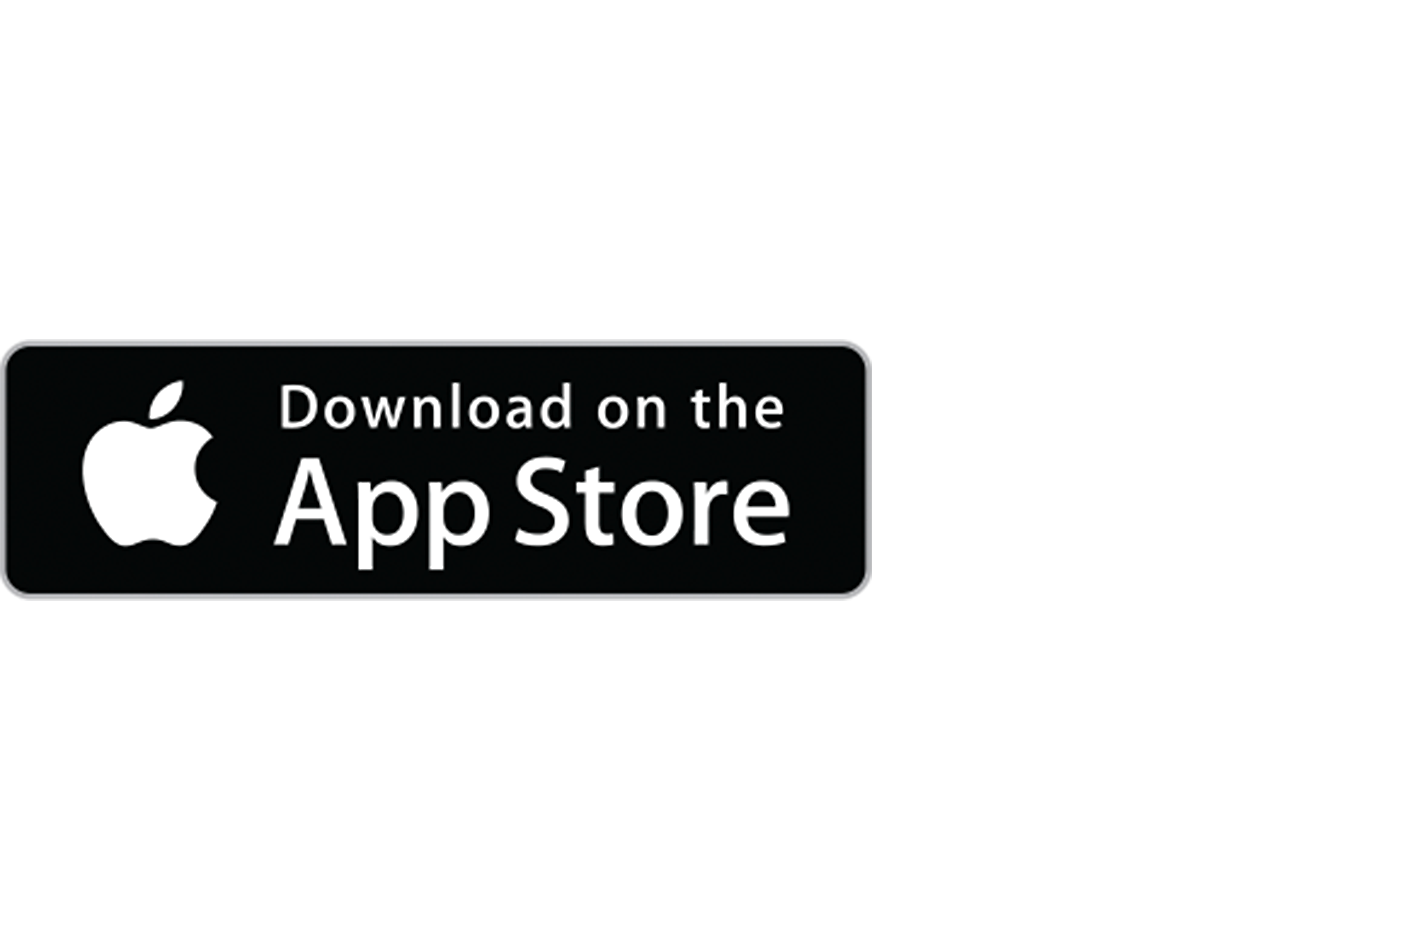 Gambar logo Apple App Store dengan teks "Download" di bagian atas